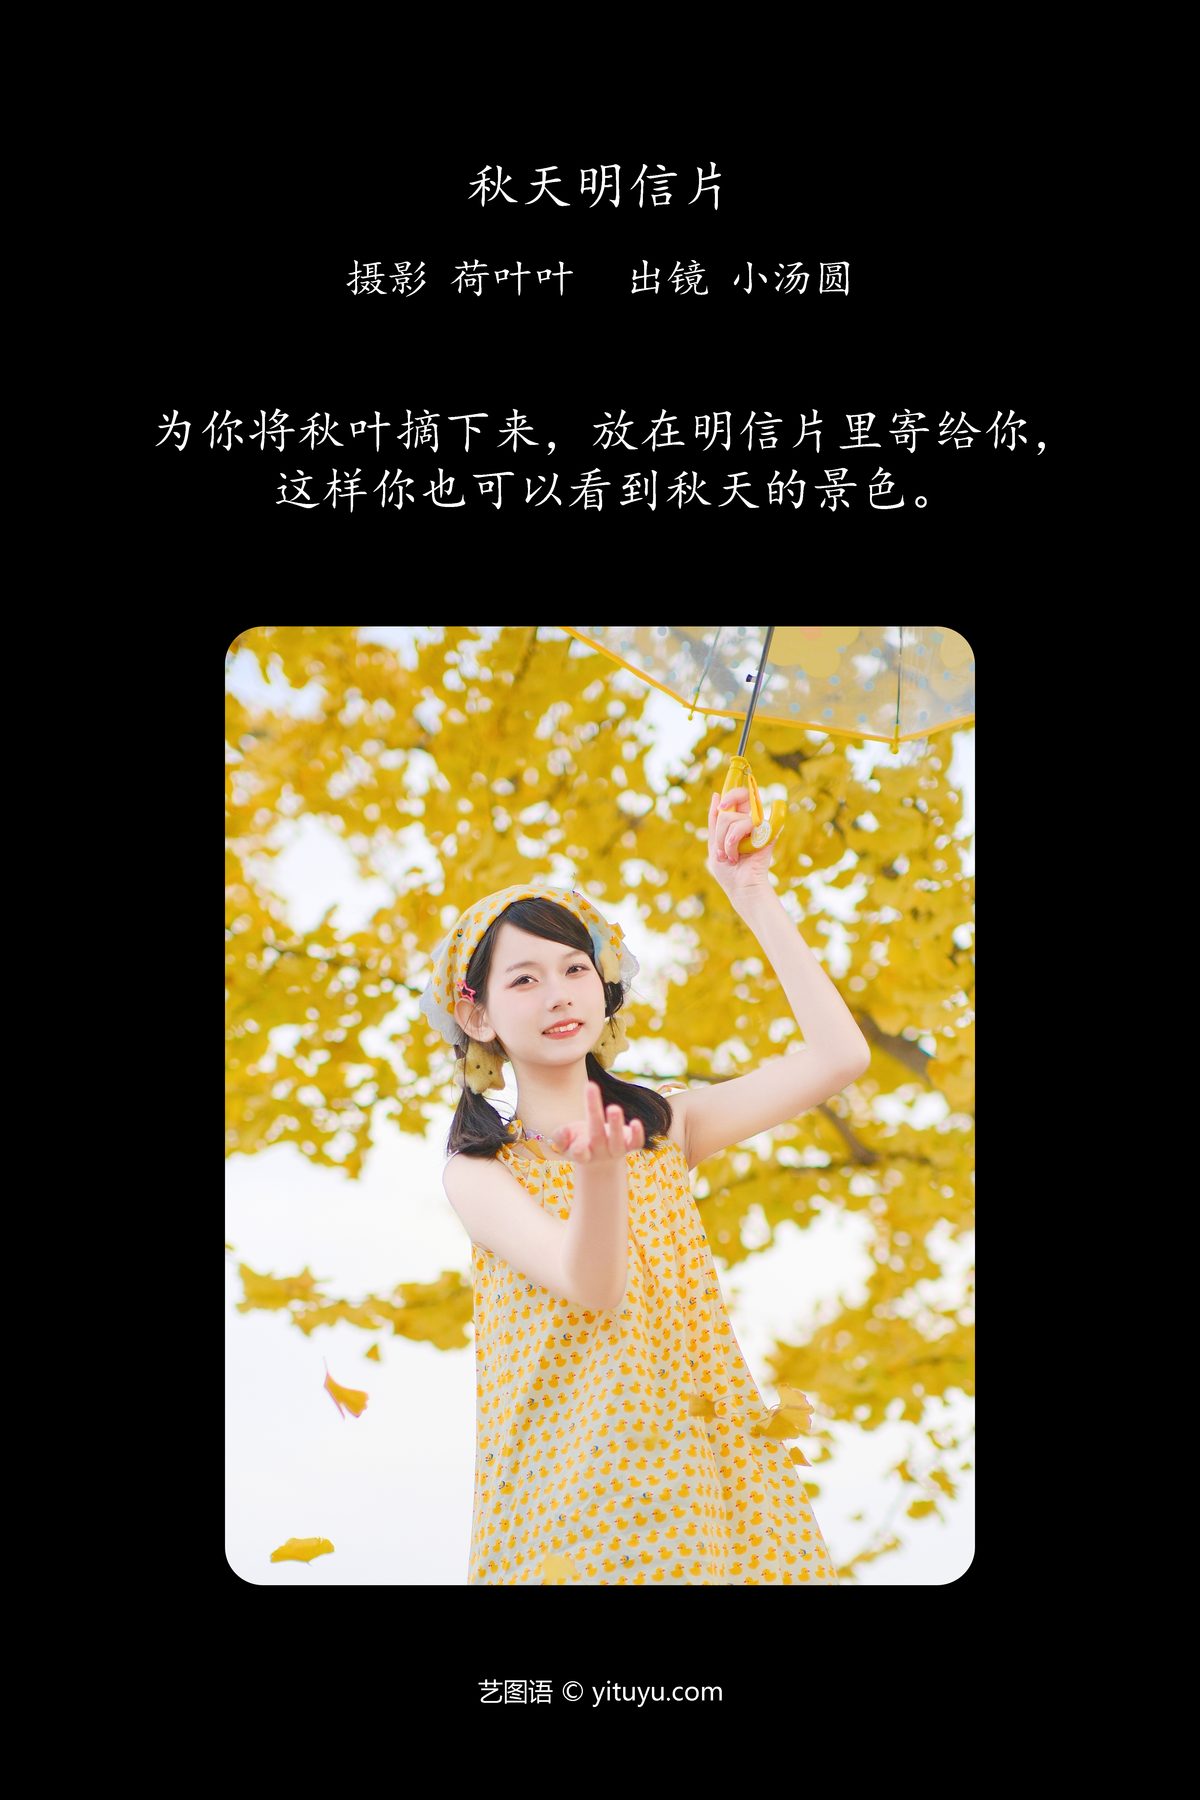 YiTuYu艺图语 Vol 6139 Xiao Tang Yuan 0002 0444064025.jpg